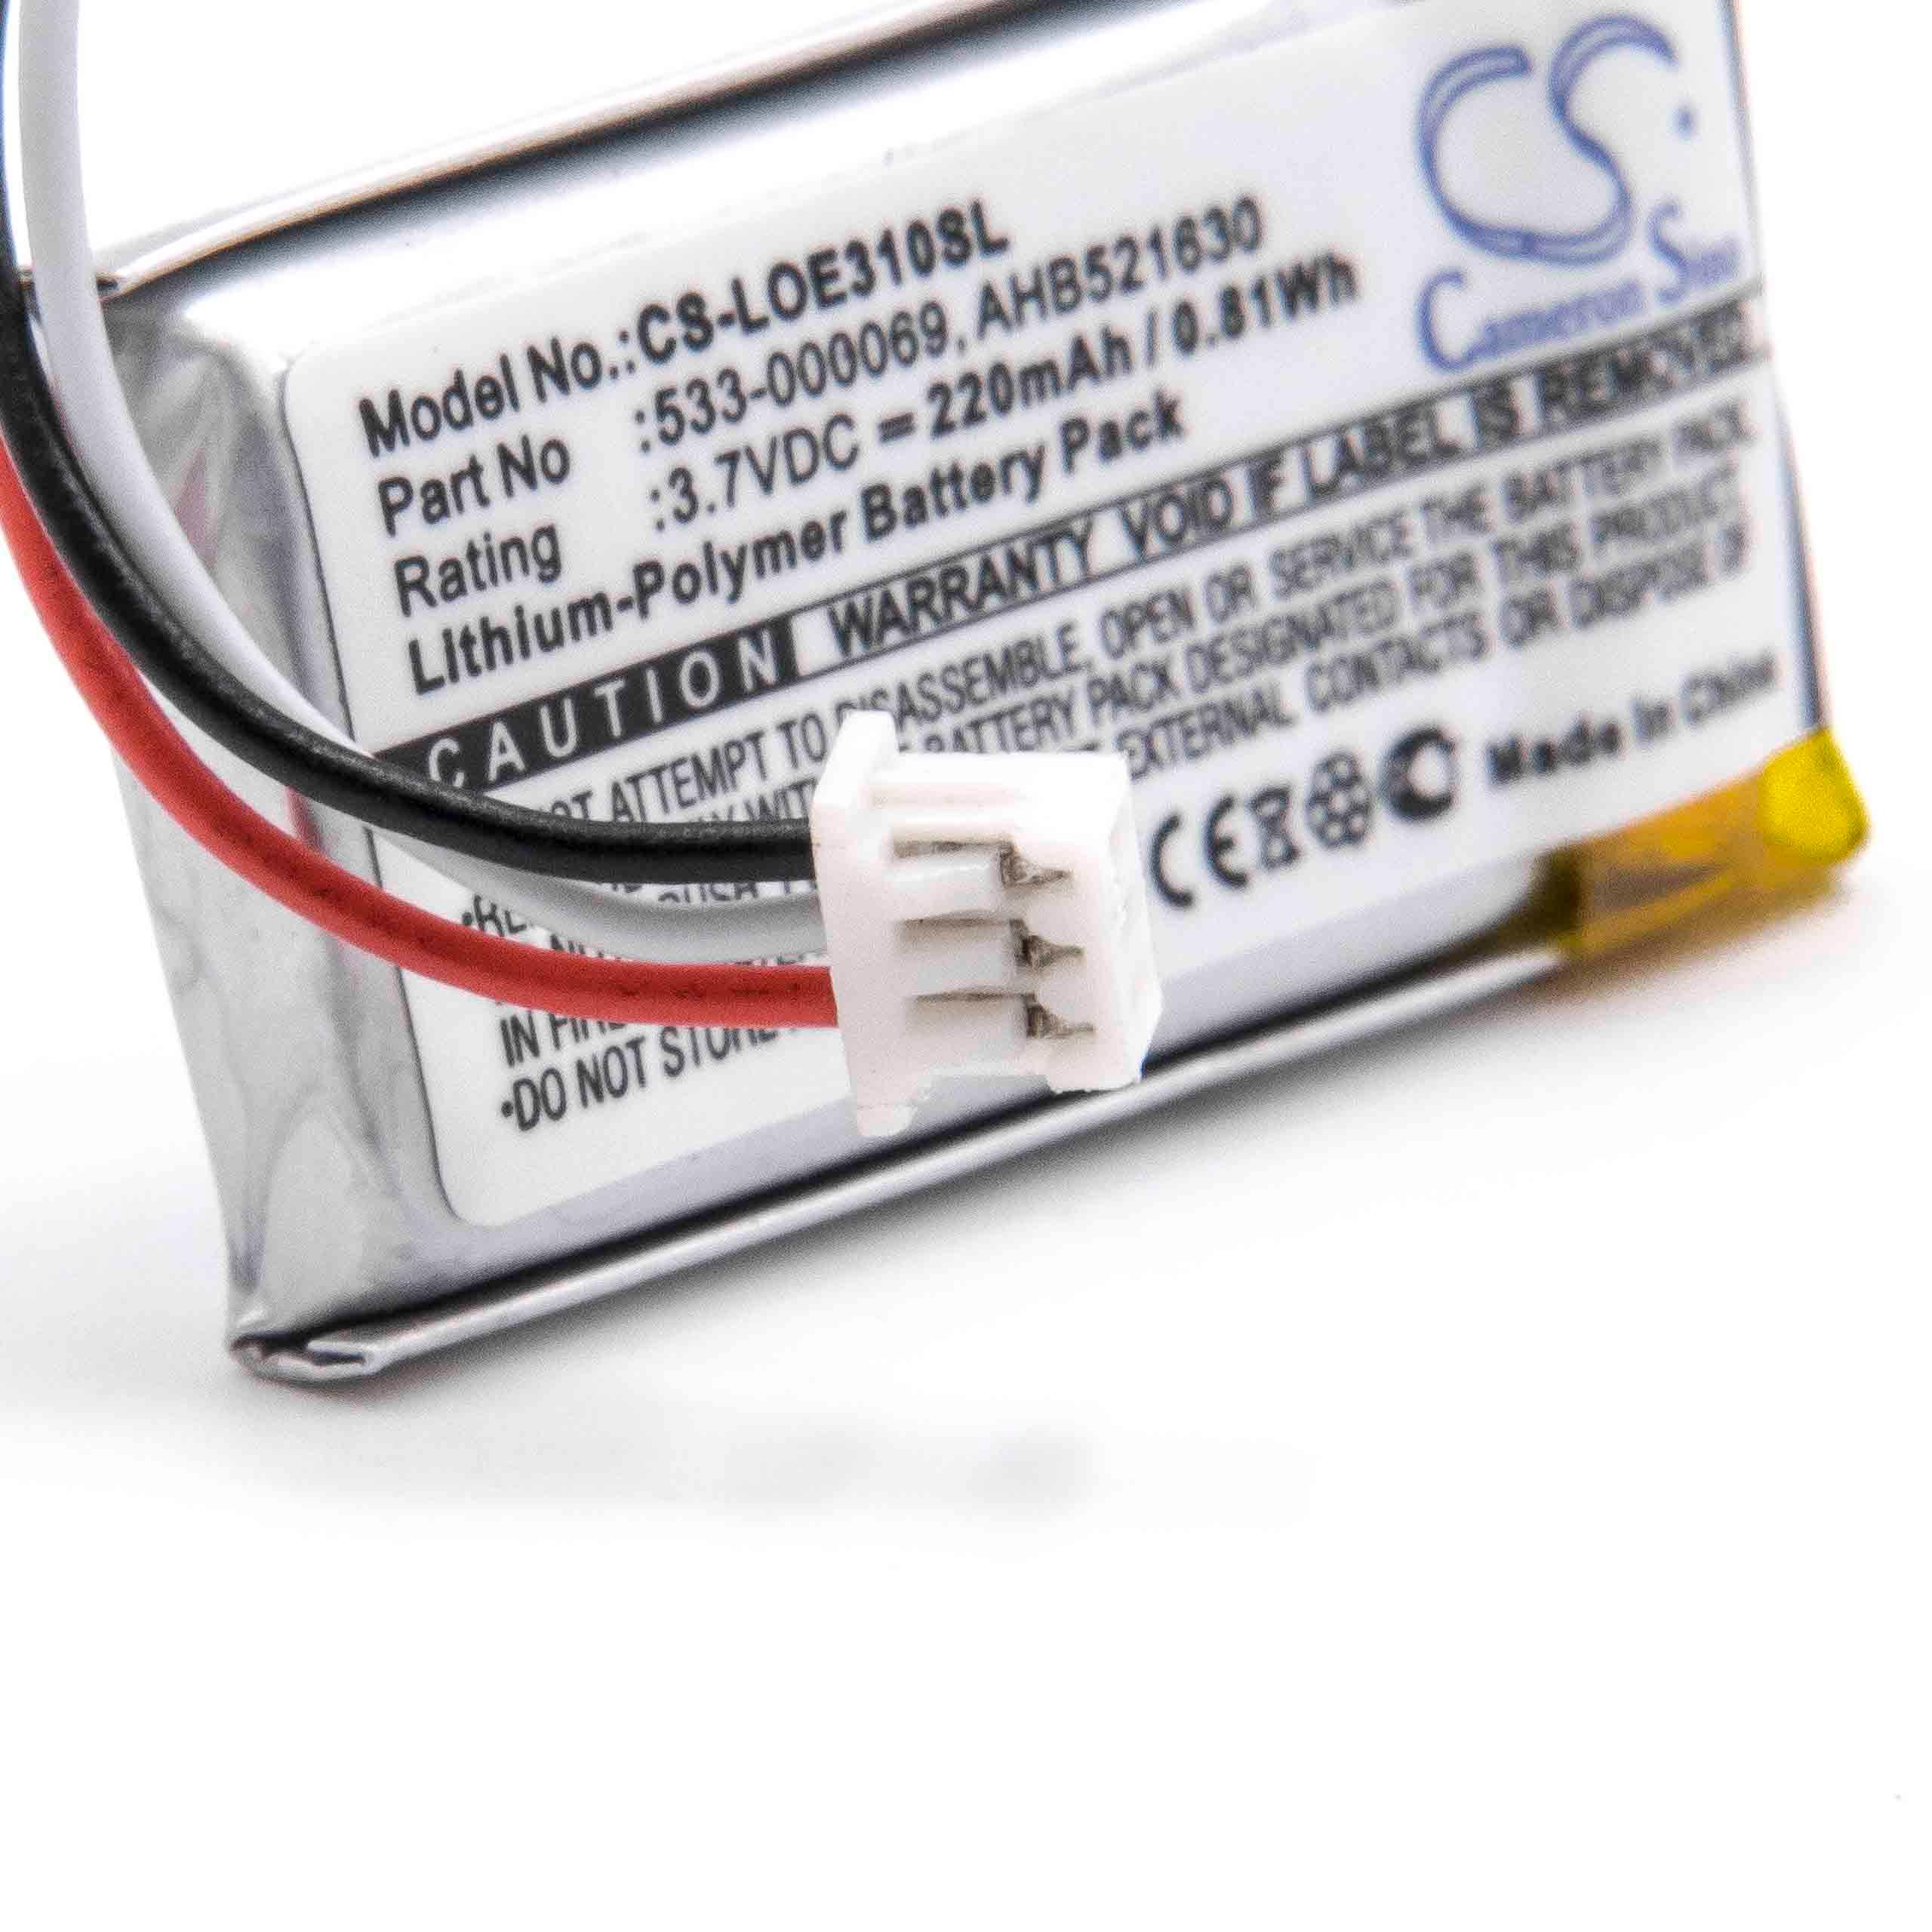 Batterie remplace Logitech 533-000069, AHB521630 pour casque audio - 220mAh 3,7V Li-polymère